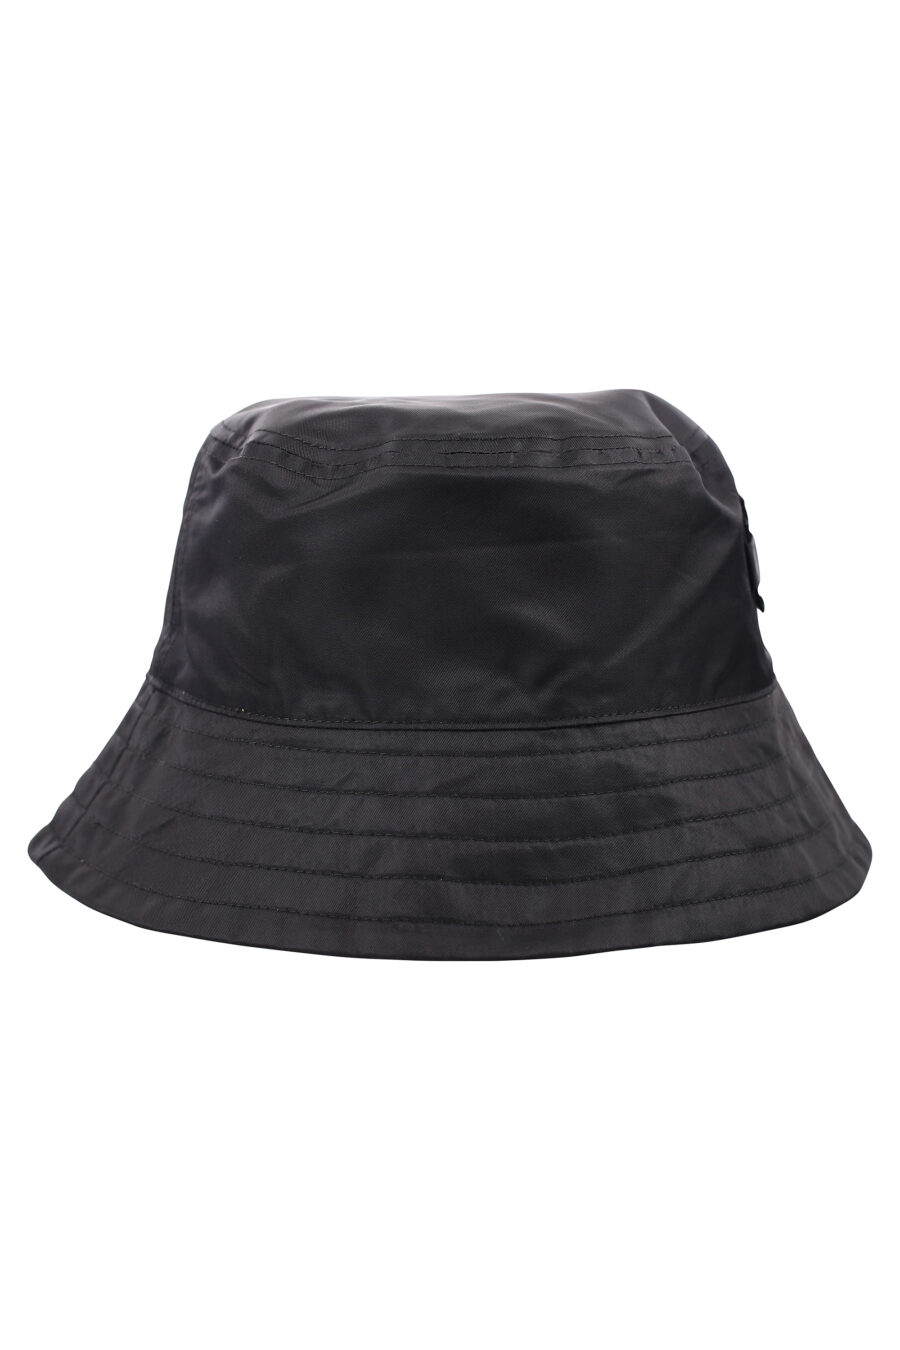 Sombrero de pescador negro reversible con logo "rue st-guillaume" - IMG 1852